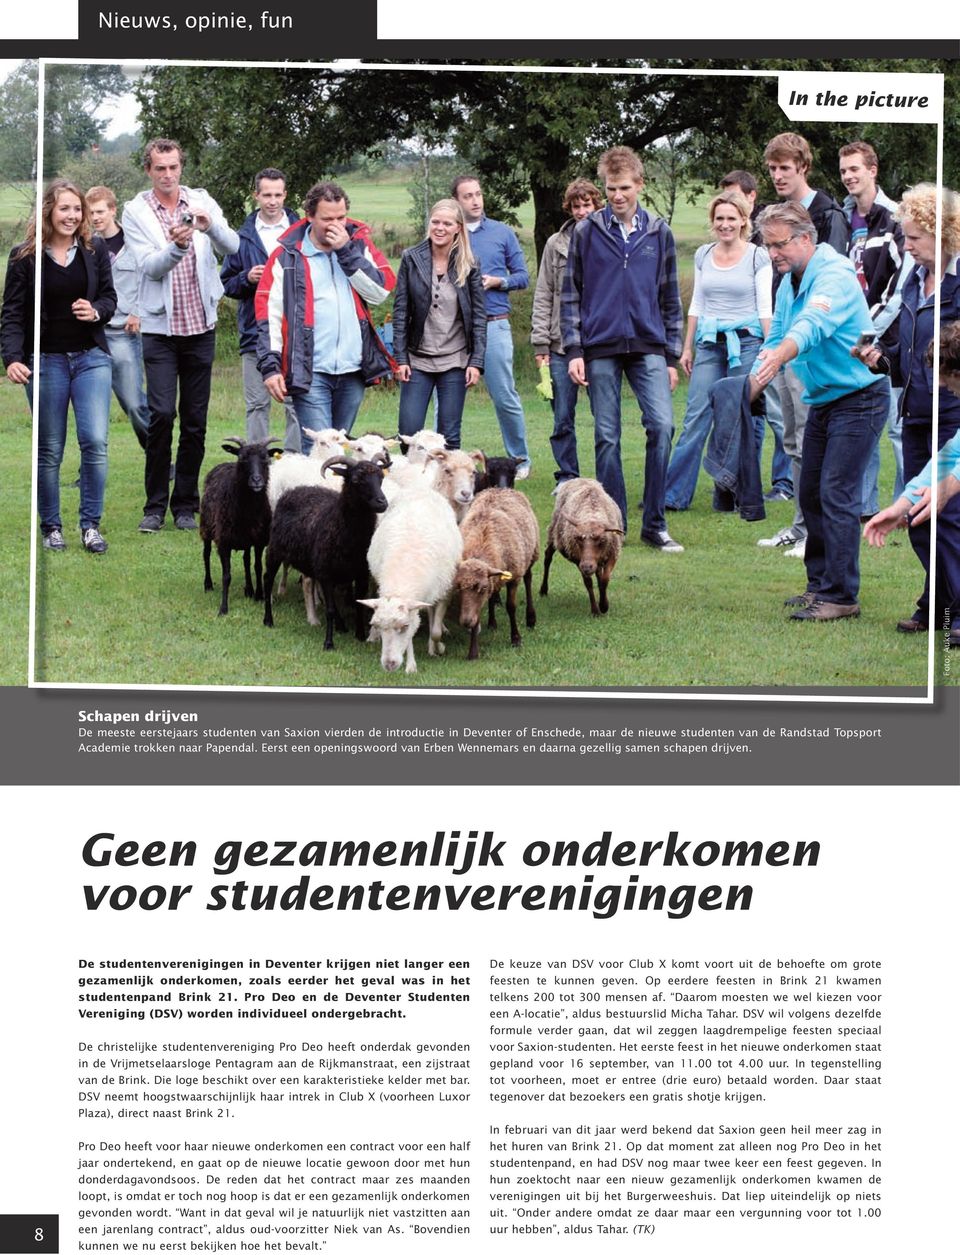 Geen gezamenlijk onderkomen voor studentenverenigingen 8 De studentenverenigingen in Deventer krijgen niet langer een gezamenlijk onderkomen, zoals eerder het geval was in het studentenpand Brink 21.